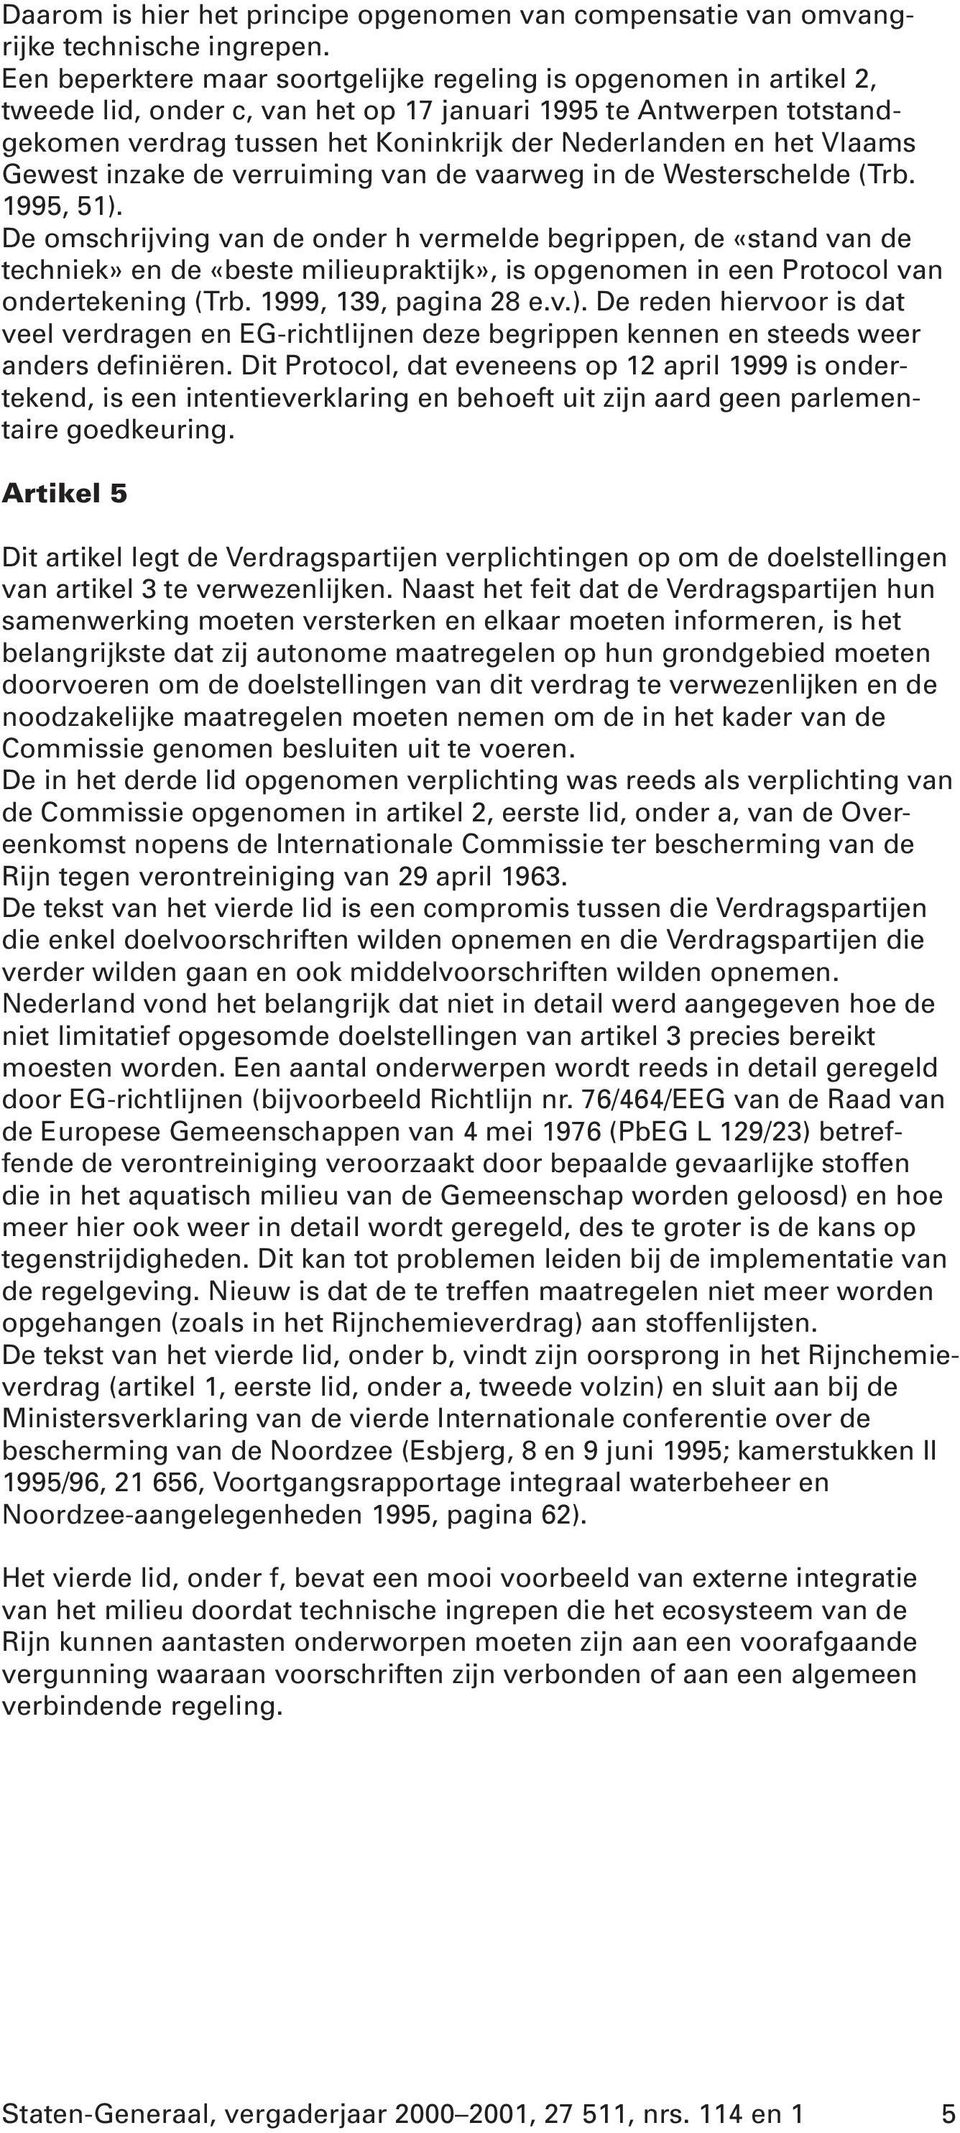 Vlaams Gewest inzake de verruiming van de vaarweg in de Westerschelde (Trb. 1995, 51).